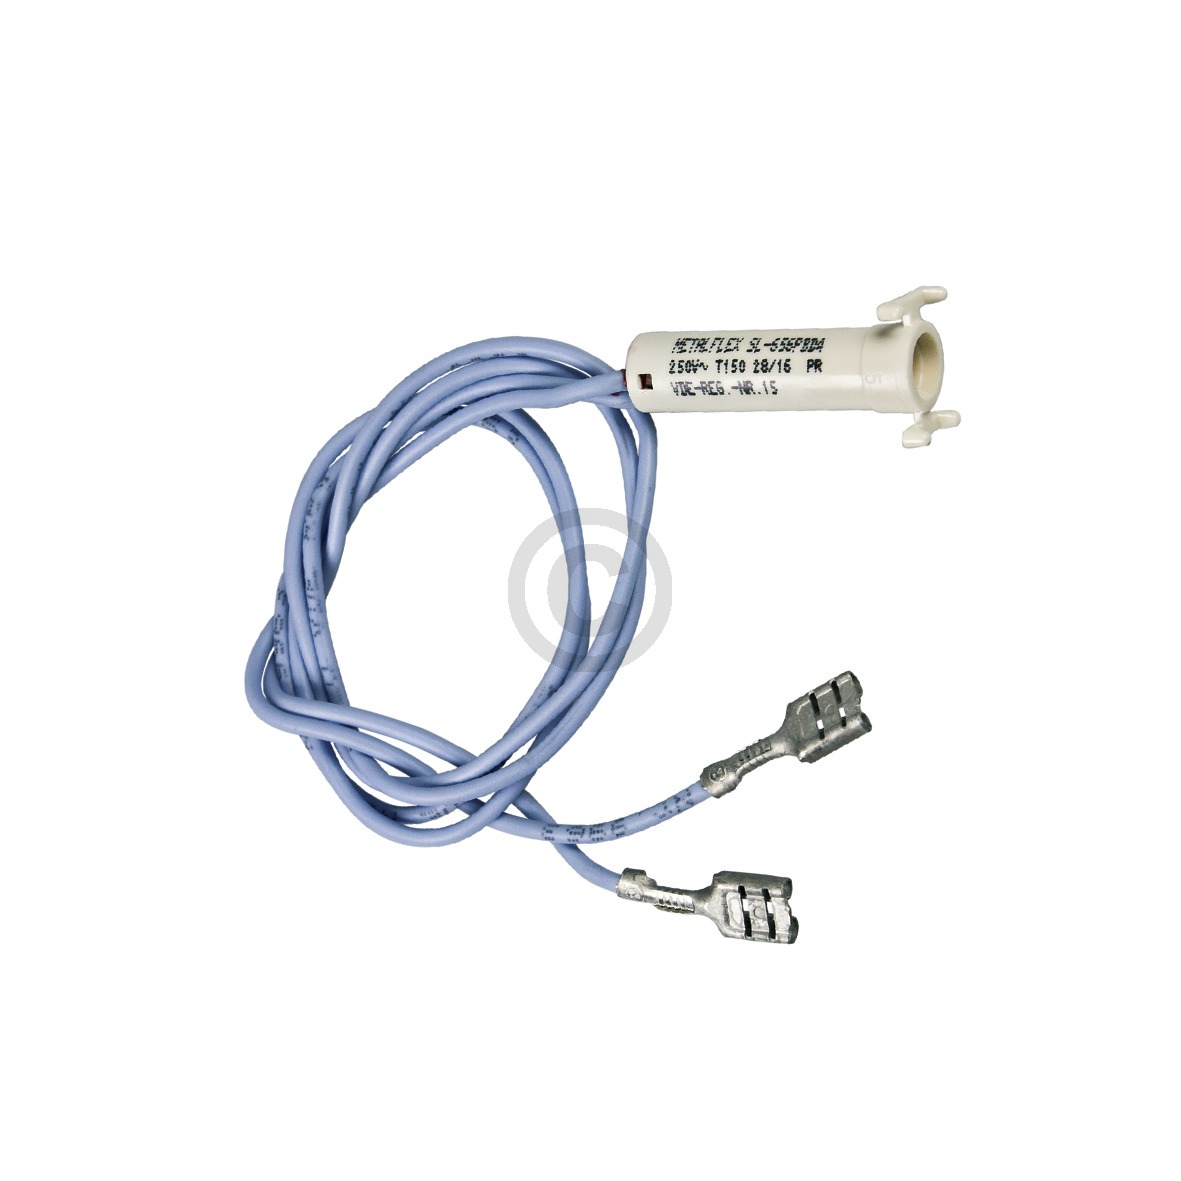 Kontrolllampe ZANUSSI 357003126/4 mit Kabel für Backofen Herd